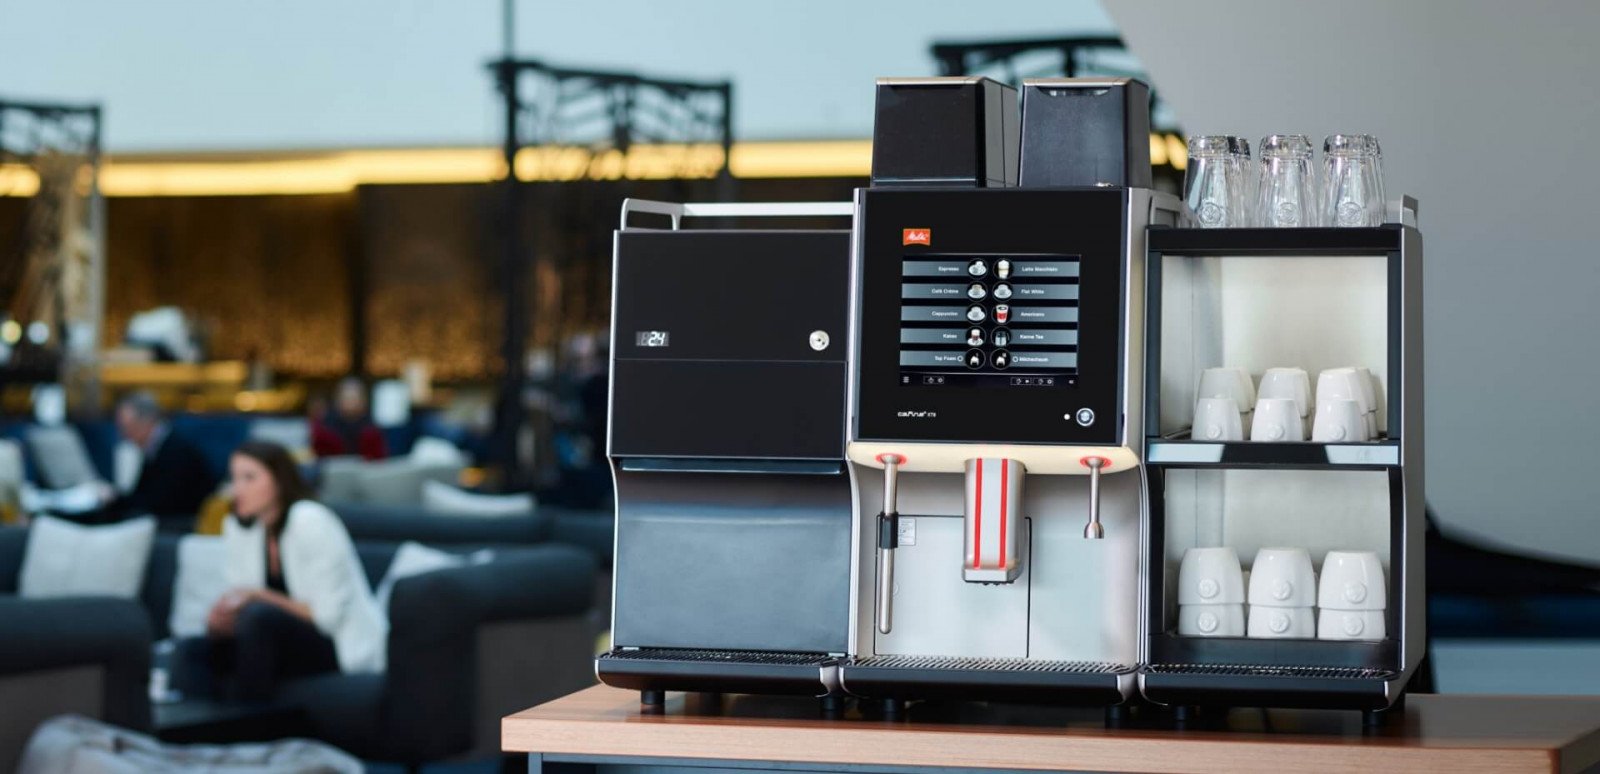 kávovar Melitta s přídavnými moduly jako lednice a nahřívač šálků na kávu